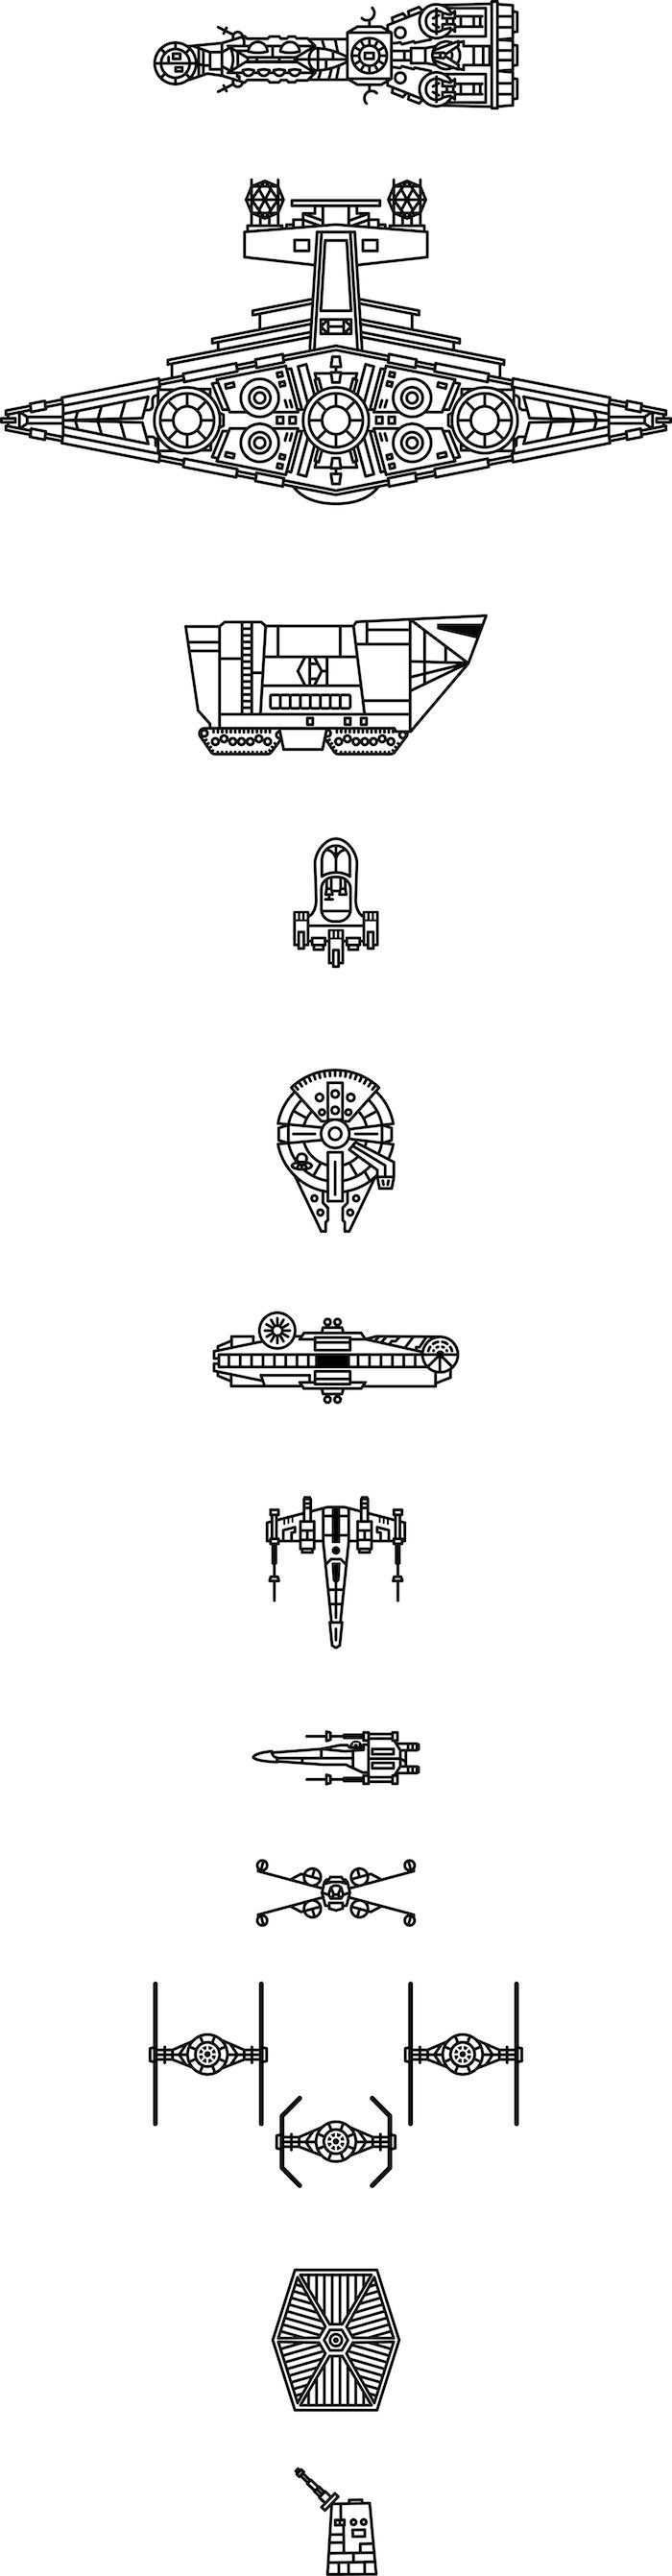 1001 Ideen Zum Thema Star Wars Tattoo Und Seine Bedeutung Bedeutung Ideen Seine Star Tattoo Thema Star Wars Tattoo Star Wars Spaceships War Tattoo